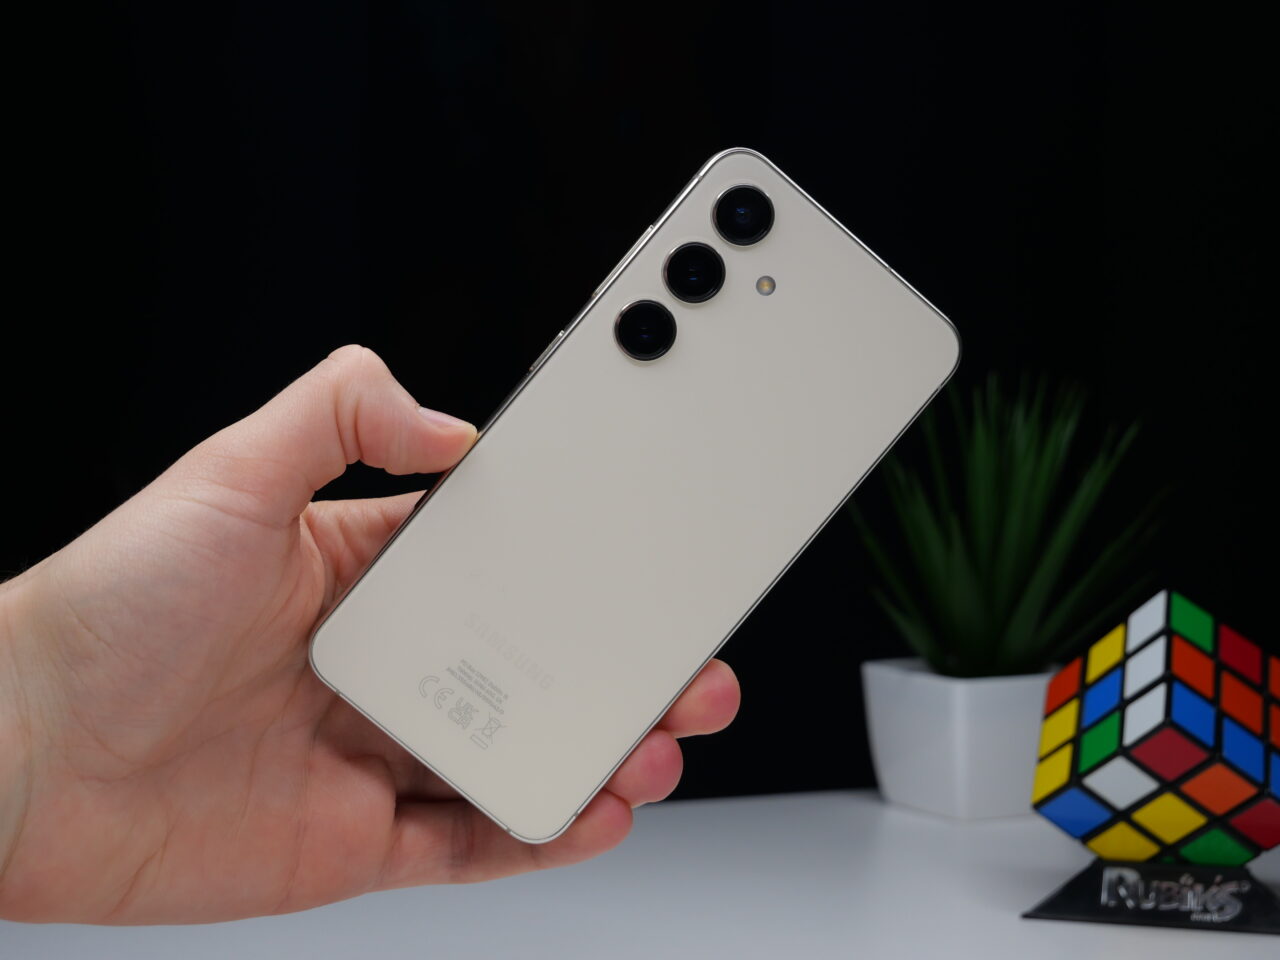 Parte traseira de um smartphone na mão, com câmera tripla e logotipo do fabricante, tendo como fundo uma tela preta, uma planta verde e um cubo de Rubik.